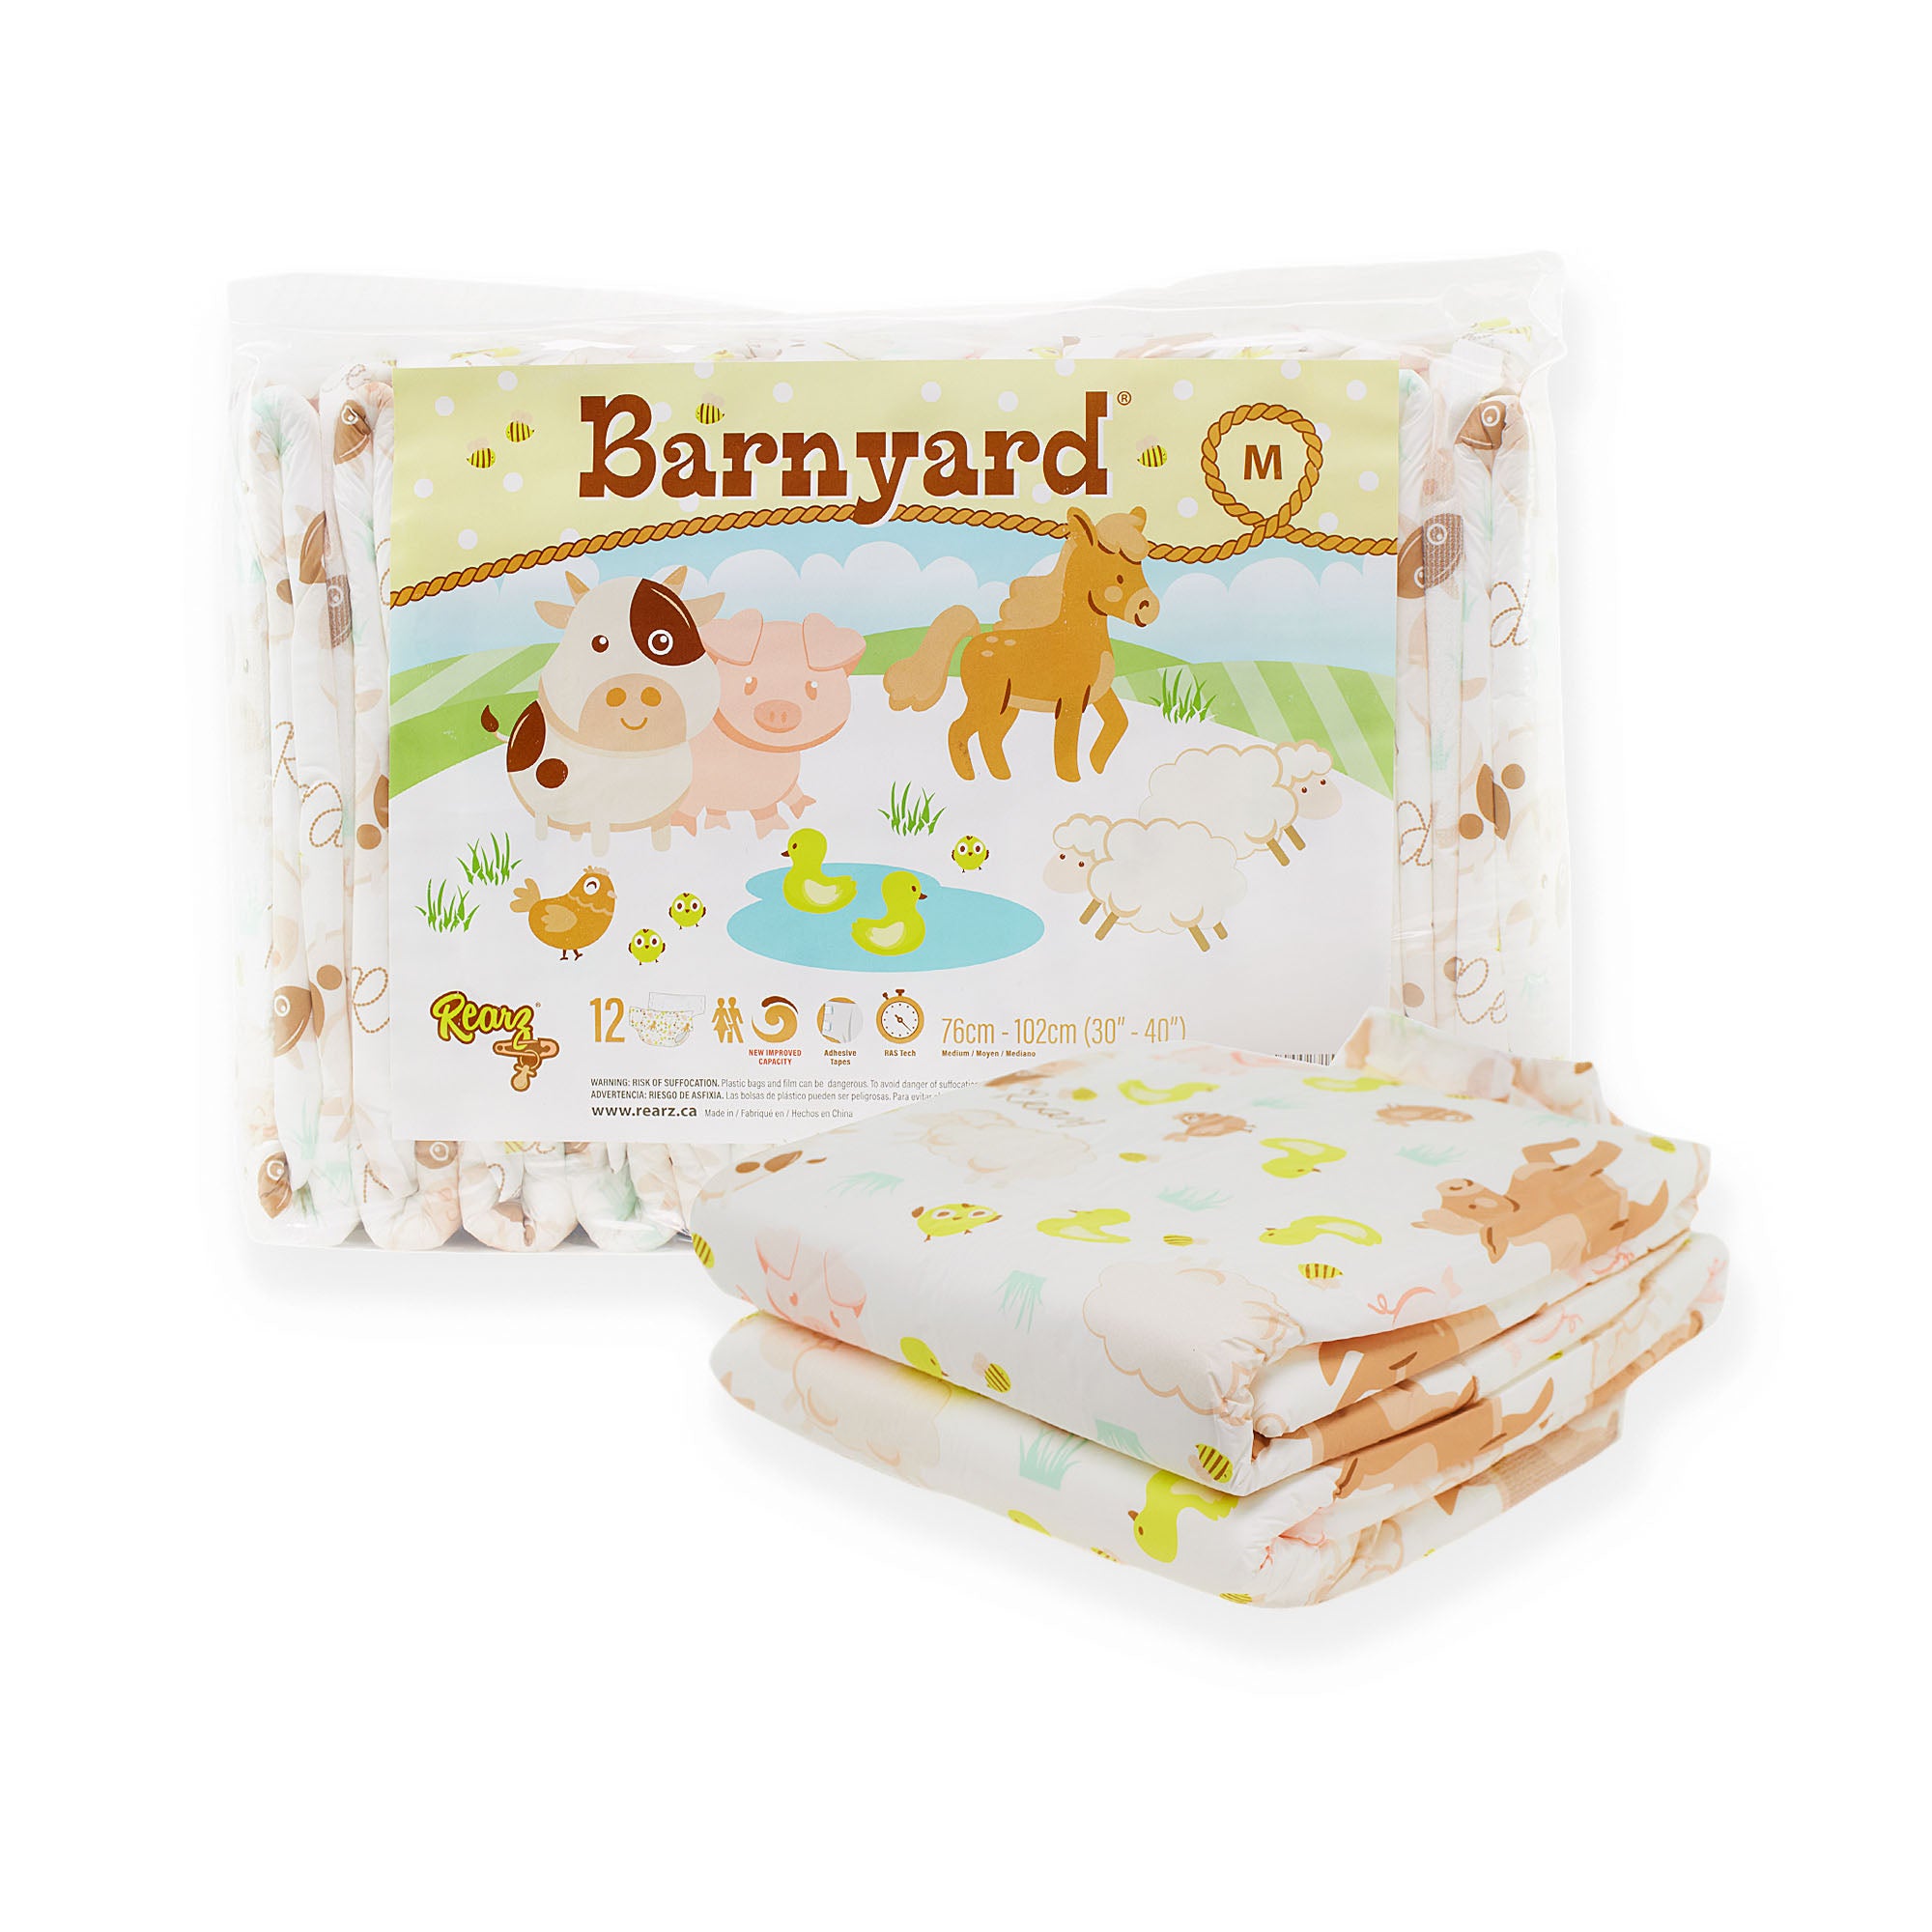 Rearz Barnyard Adult Diapers